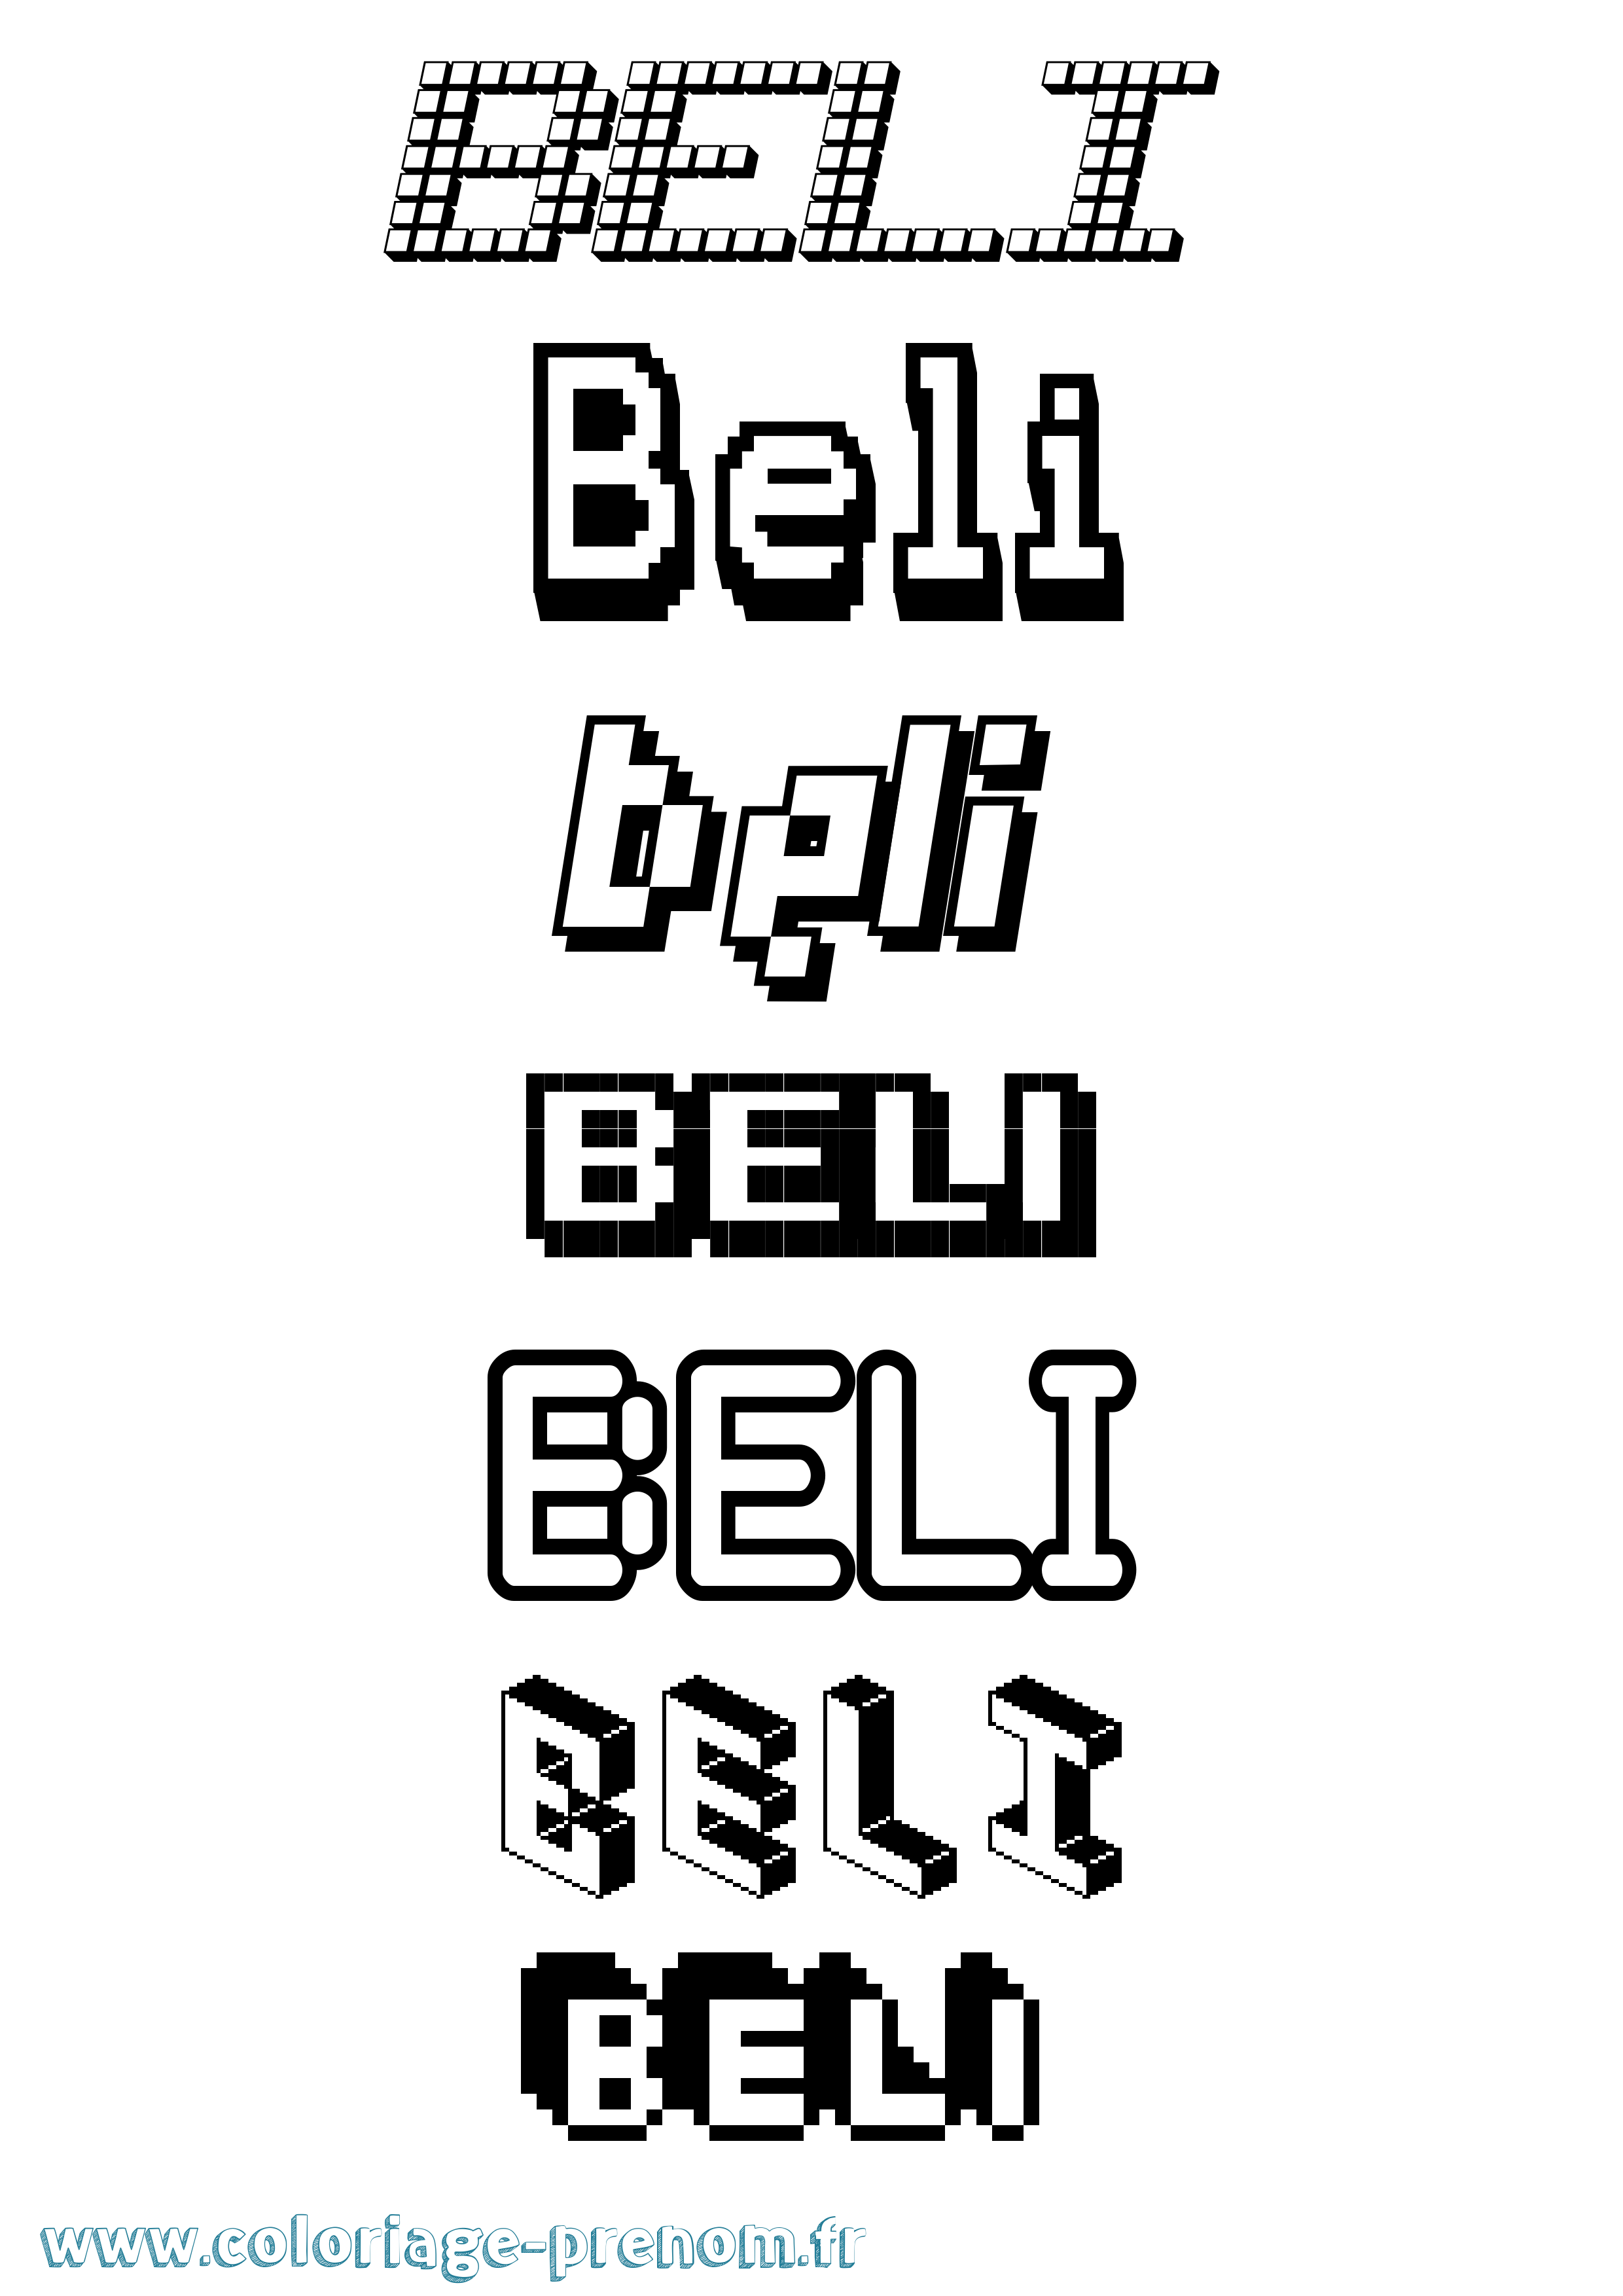 Coloriage prénom Beli Pixel